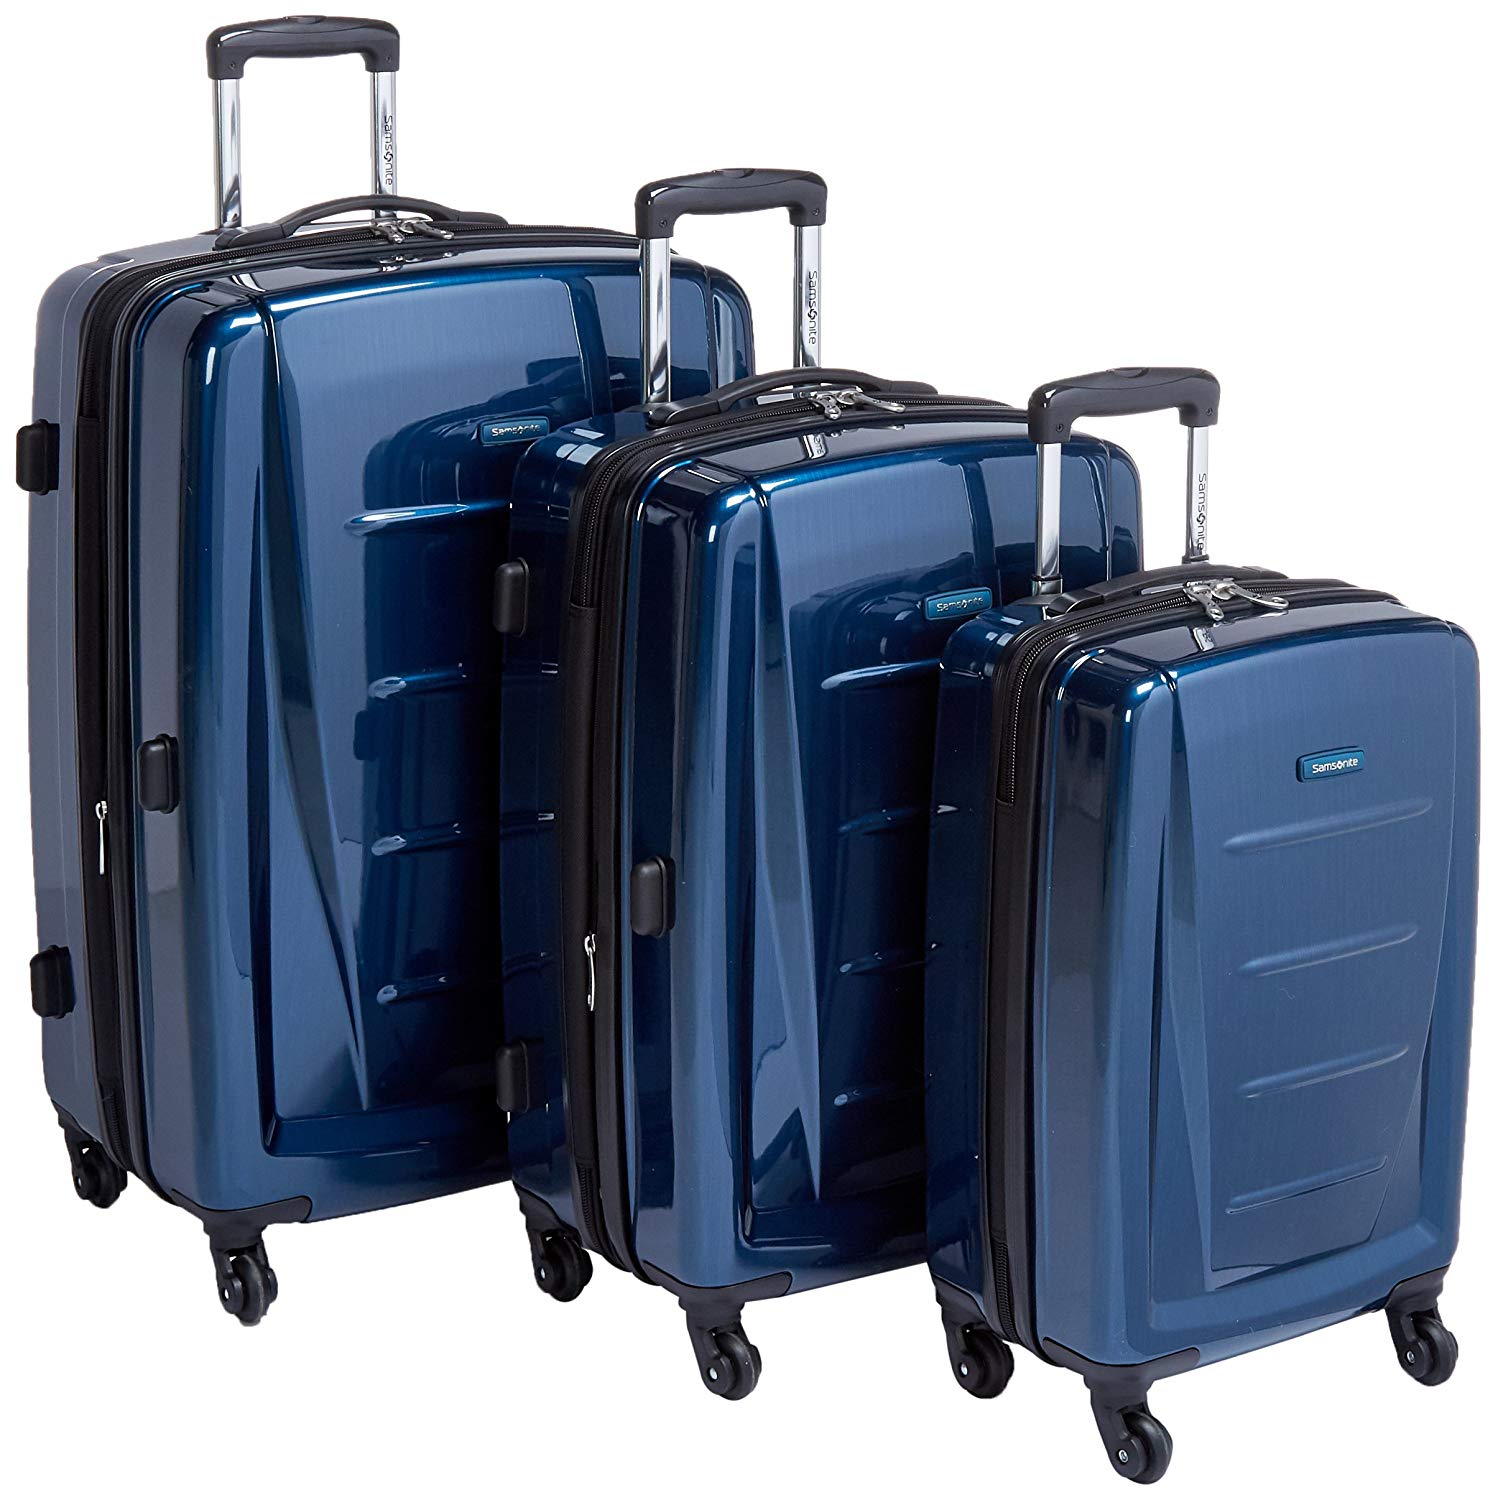 10 Best Hardside Luggage 2022 Luggage & Travel